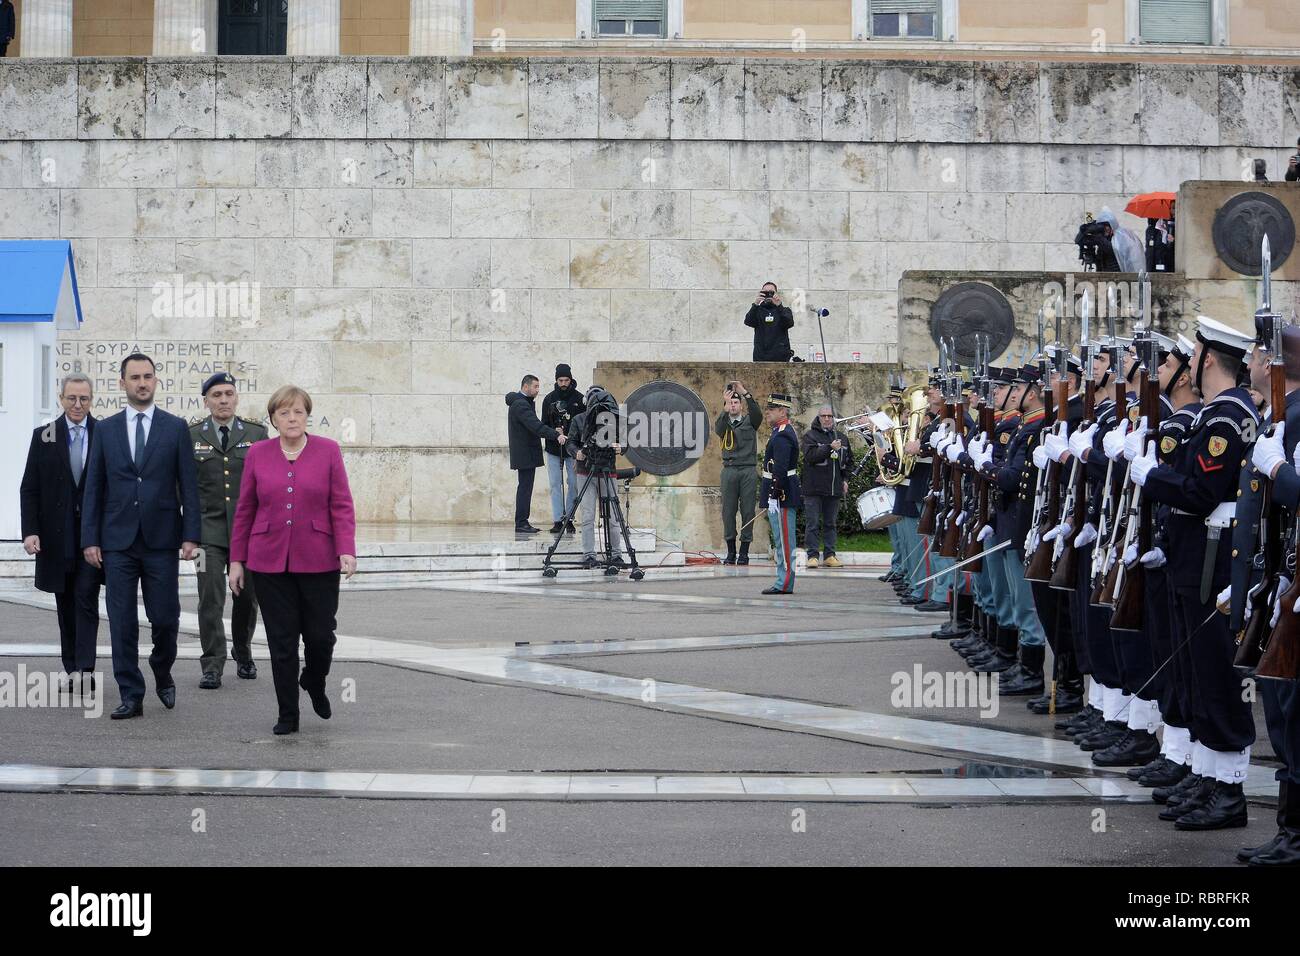 Chancelier de la République fédérale d'Allemagne, Angela Merkel, vu l'inspection de la garde d'honneur après la cérémonie de pose de gerbe au Monument du Soldat inconnu. Banque D'Images